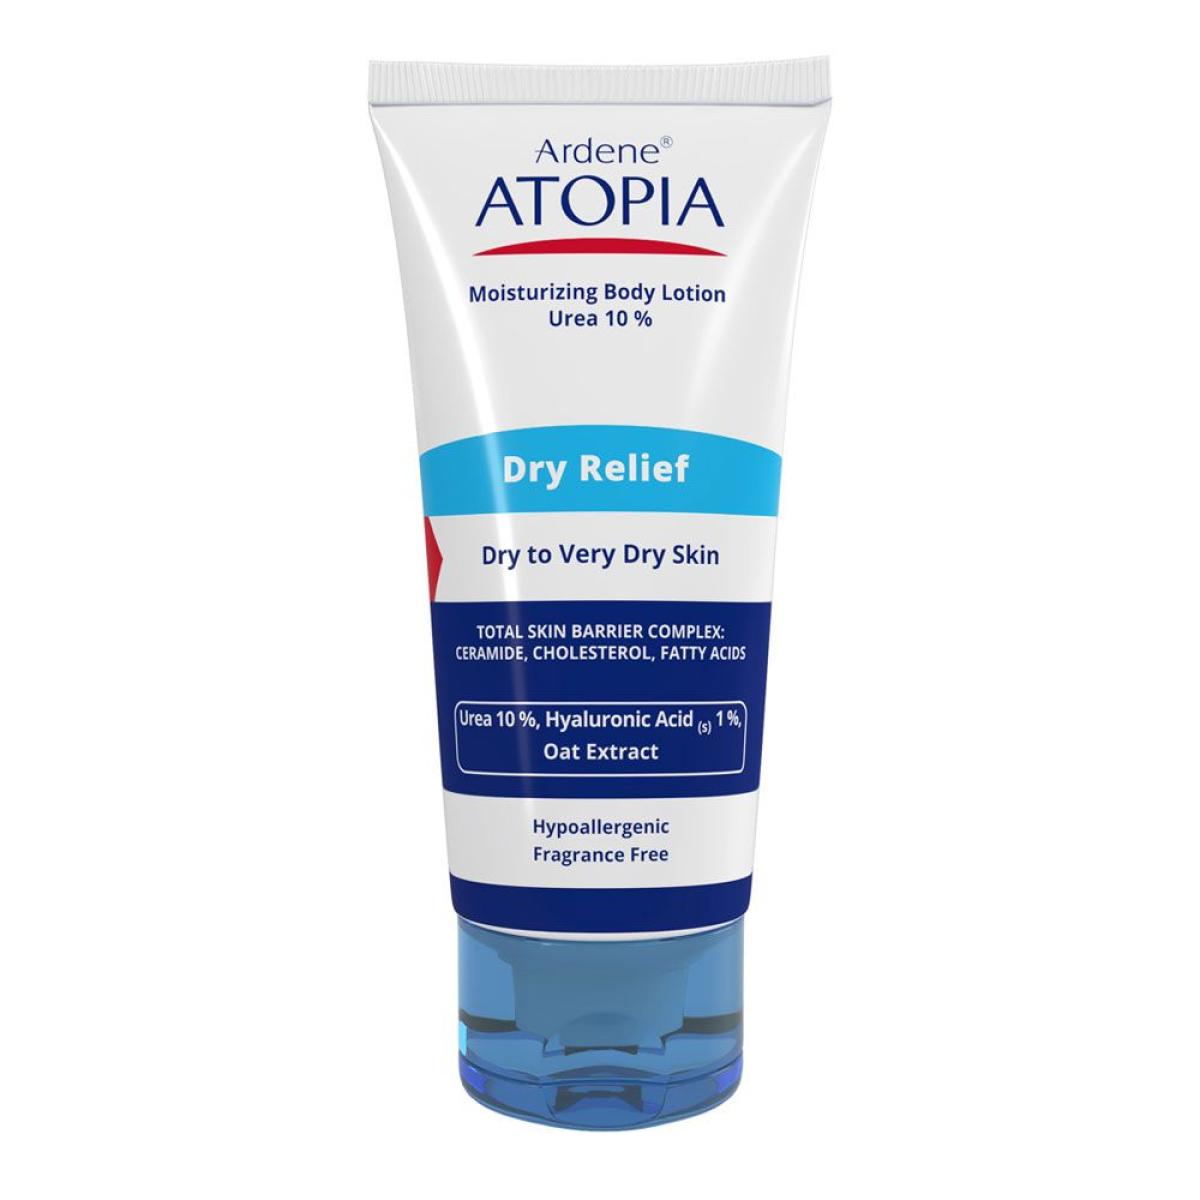 لوسیون بدن مرطوب کننده قوی اتوپیا مدل Dry Relief  - atopia ARDENE ATOPIA 10 % UREA LOTION